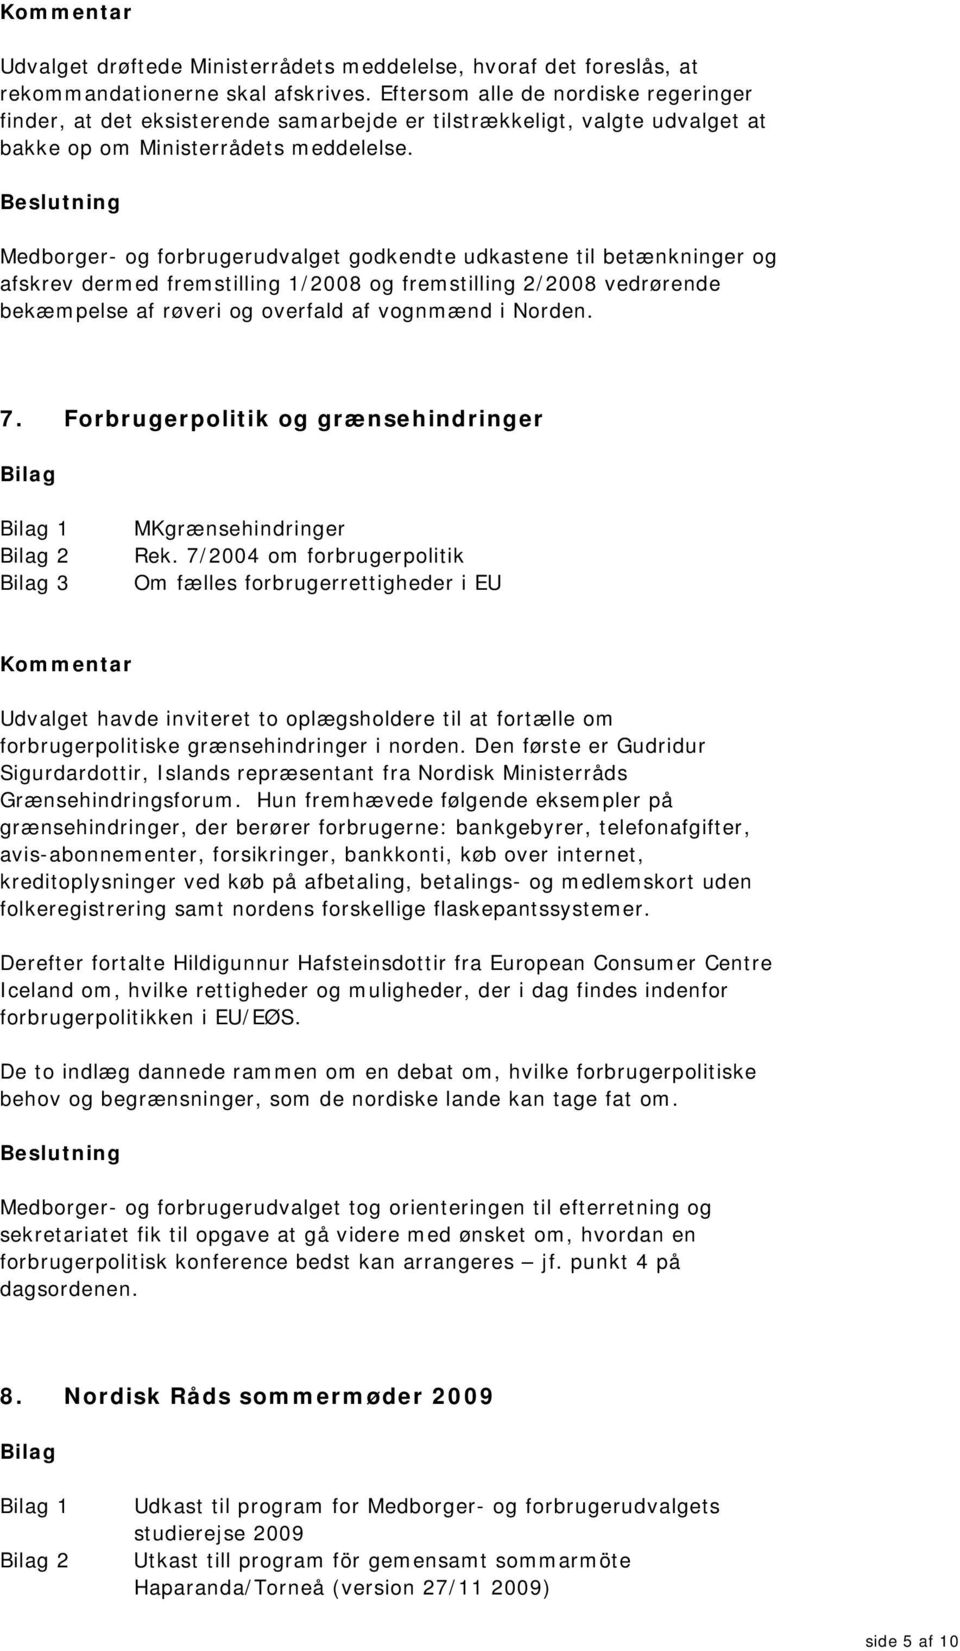 Medborger- og forbrugerudvalget godkendte udkastene til betænkninger og afskrev dermed fremstilling 1/2008 og fremstilling 2/2008 vedrørende bekæmpelse af røveri og overfald af vognmænd i Norden. 7.